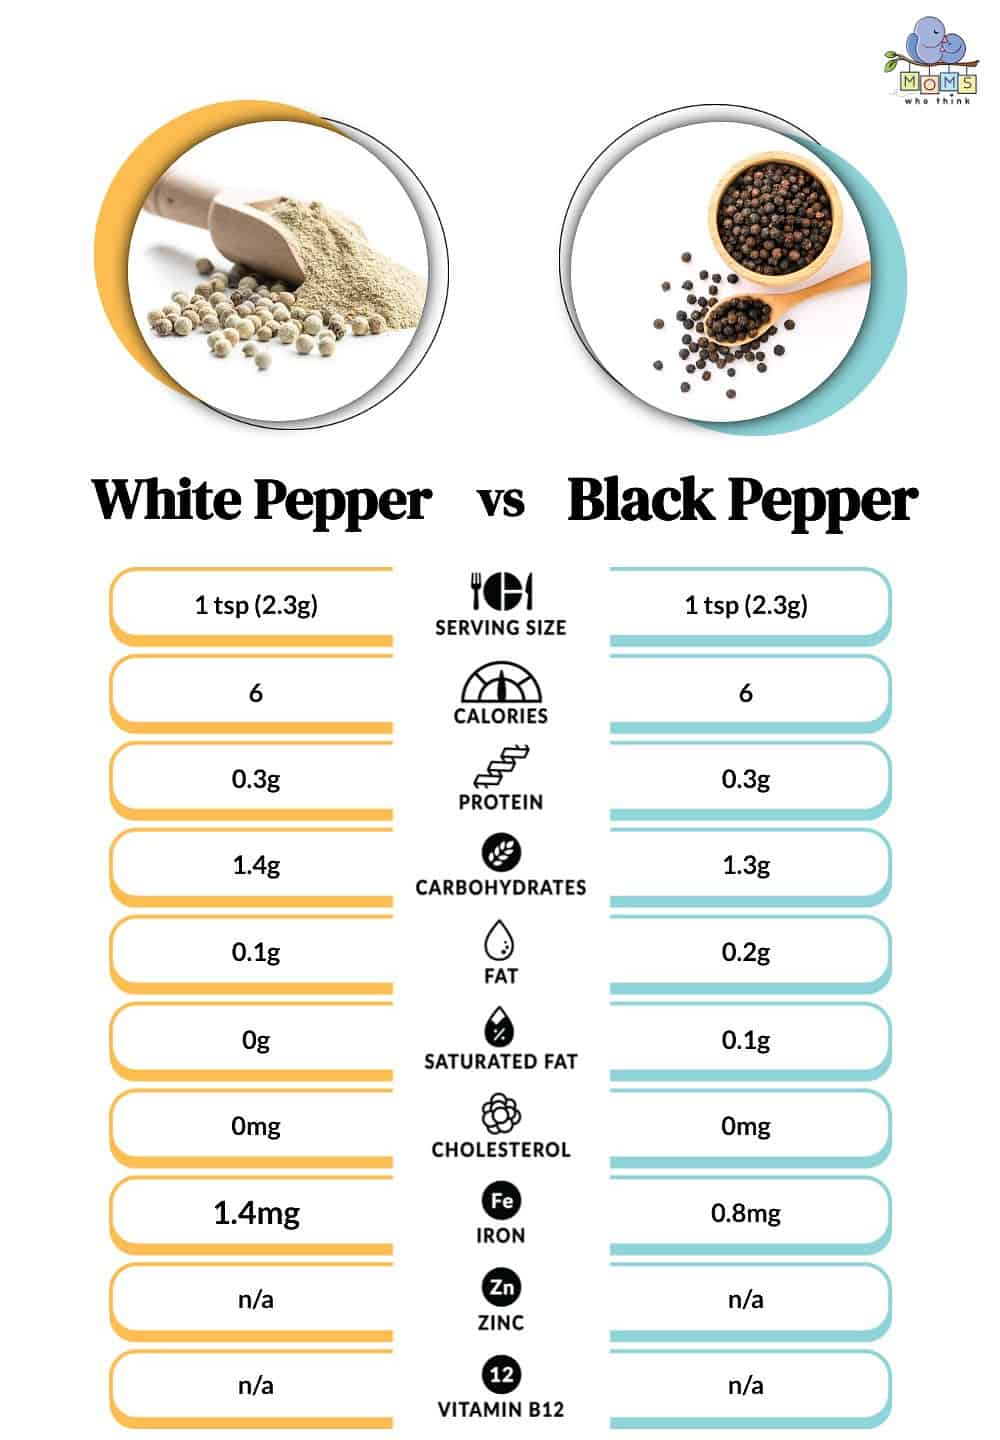 White Pepper vs Black Pepper Nutritional Facts